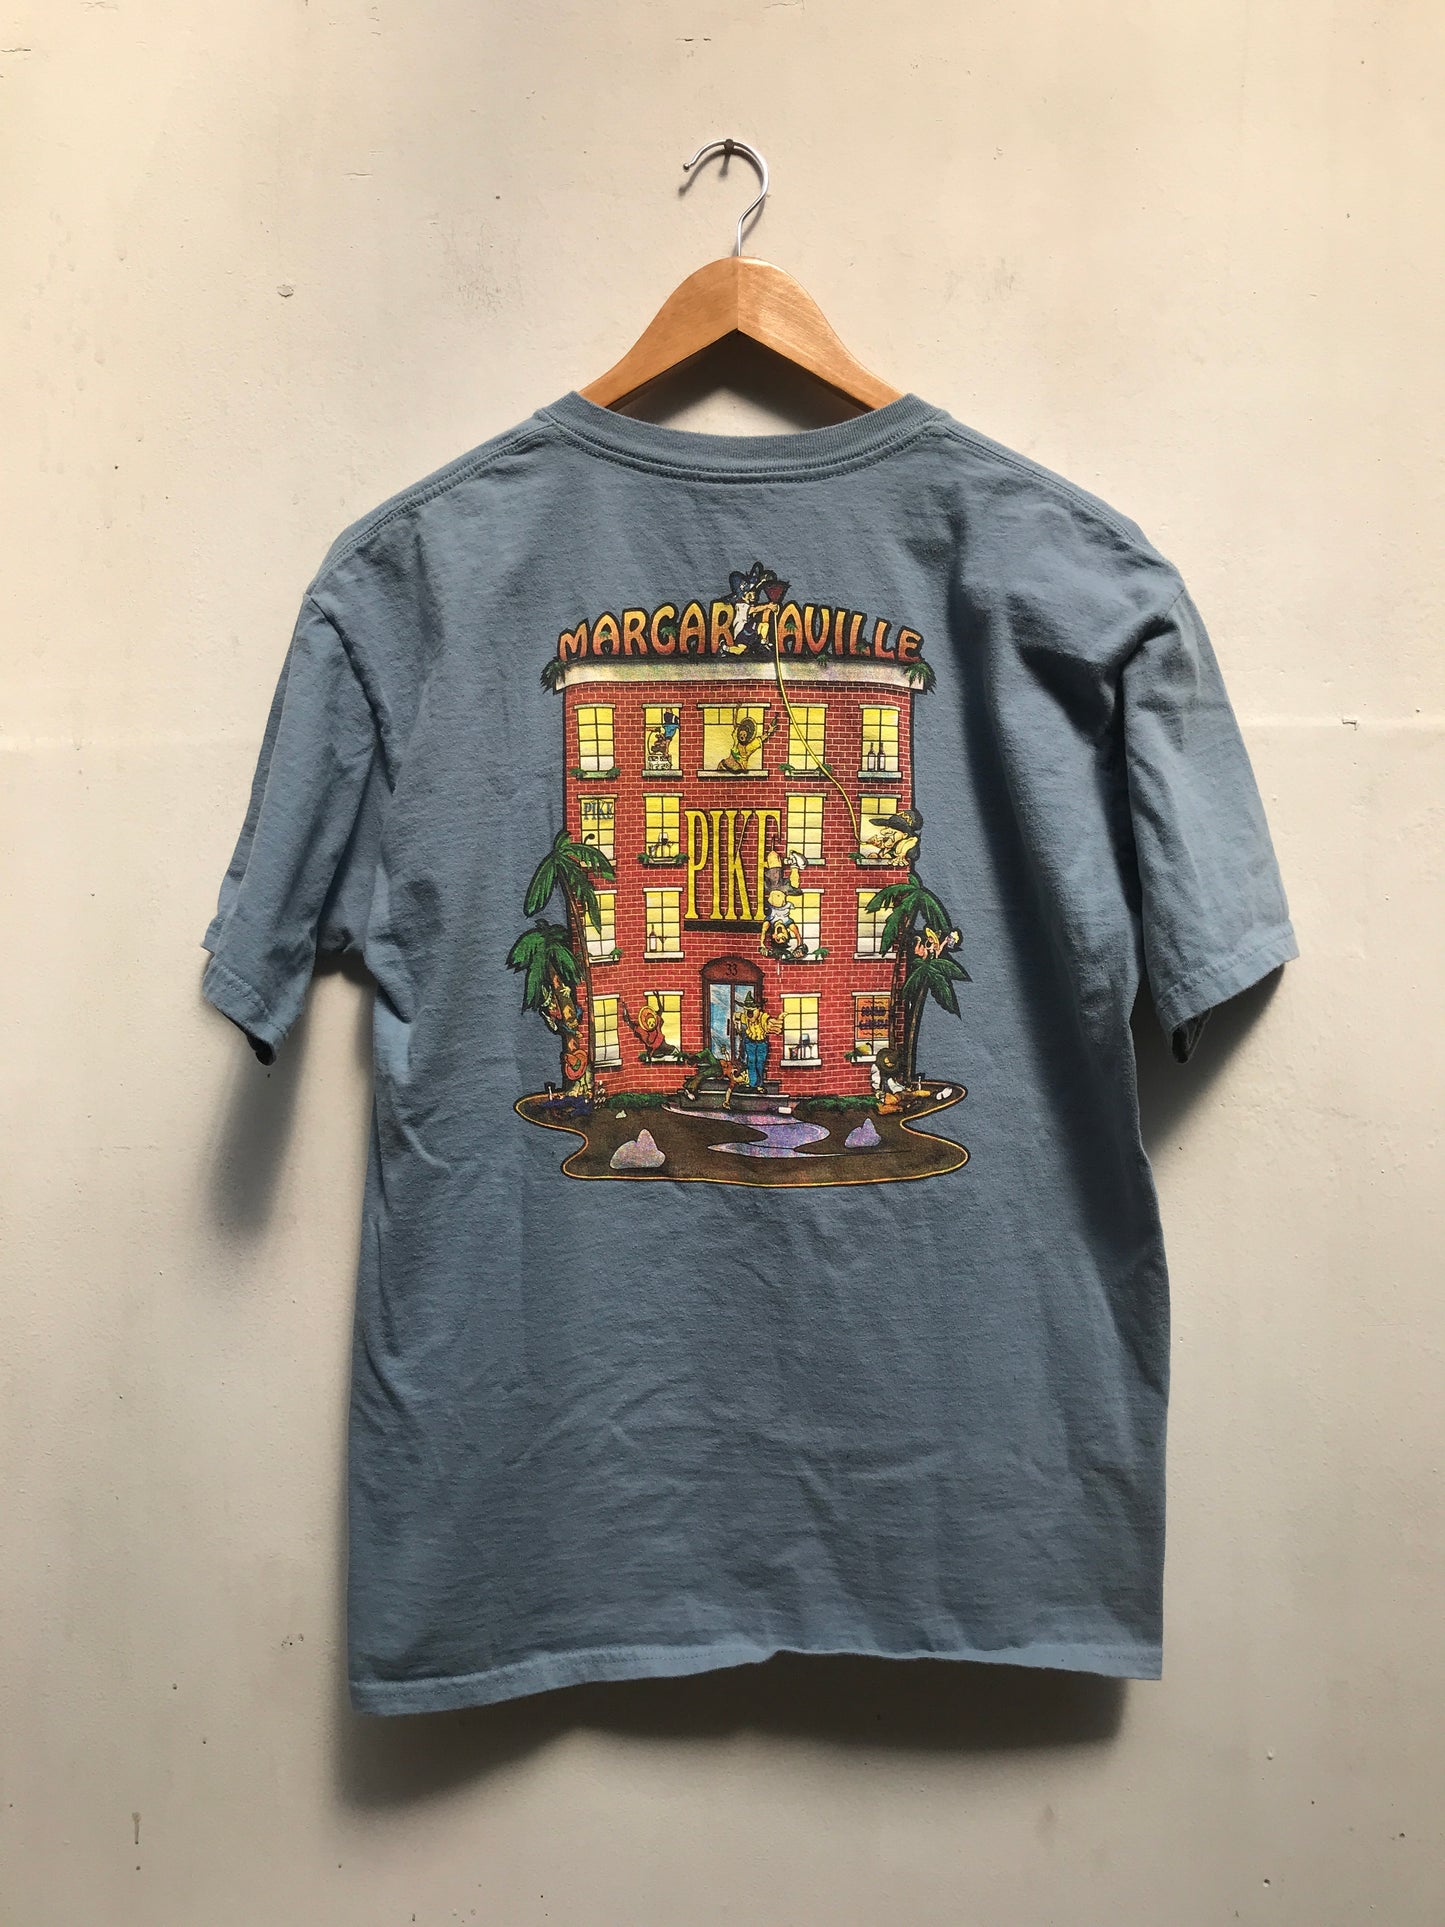 Pike's Margaritaville T-shirt